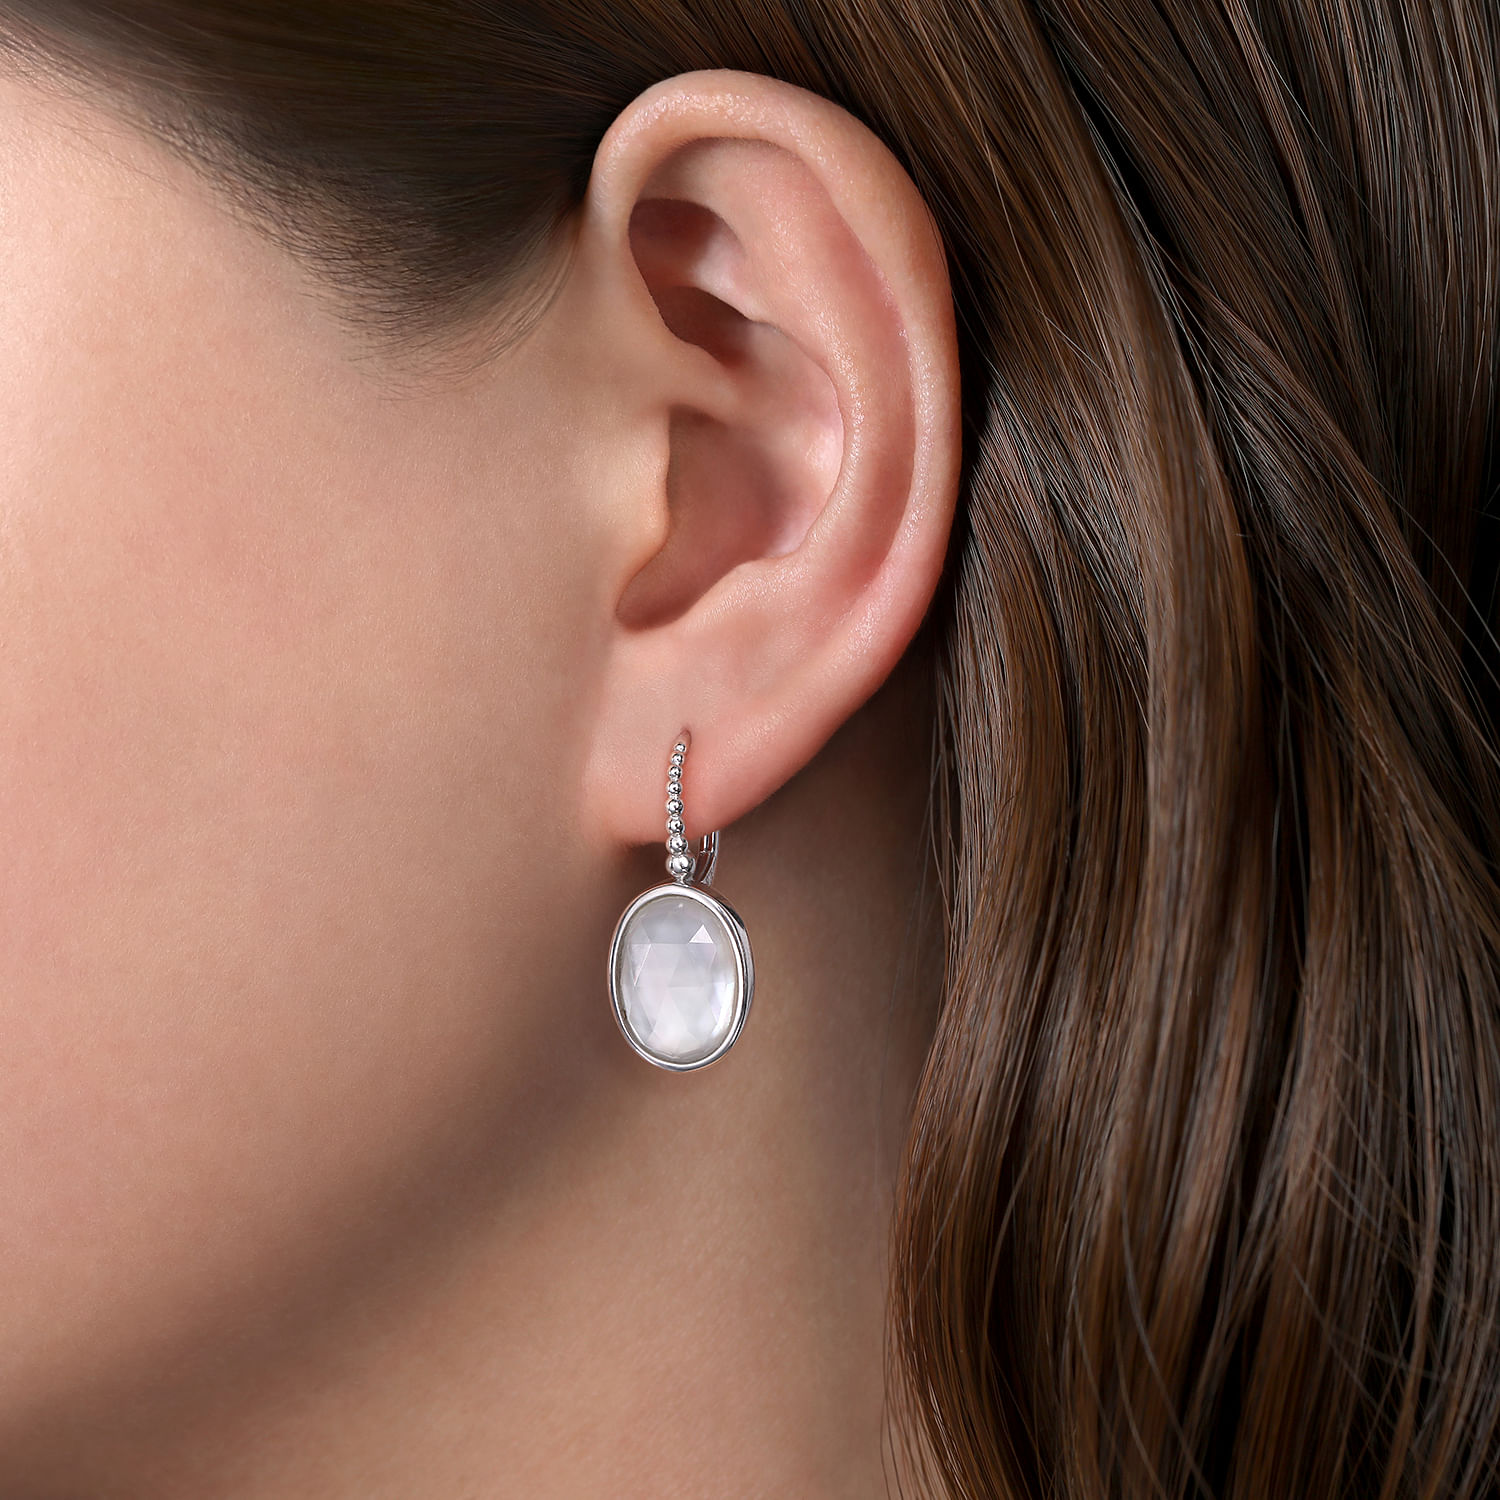 925 Sterling Silver Bujukan Rock Crystal and White MOP Drop Earrings